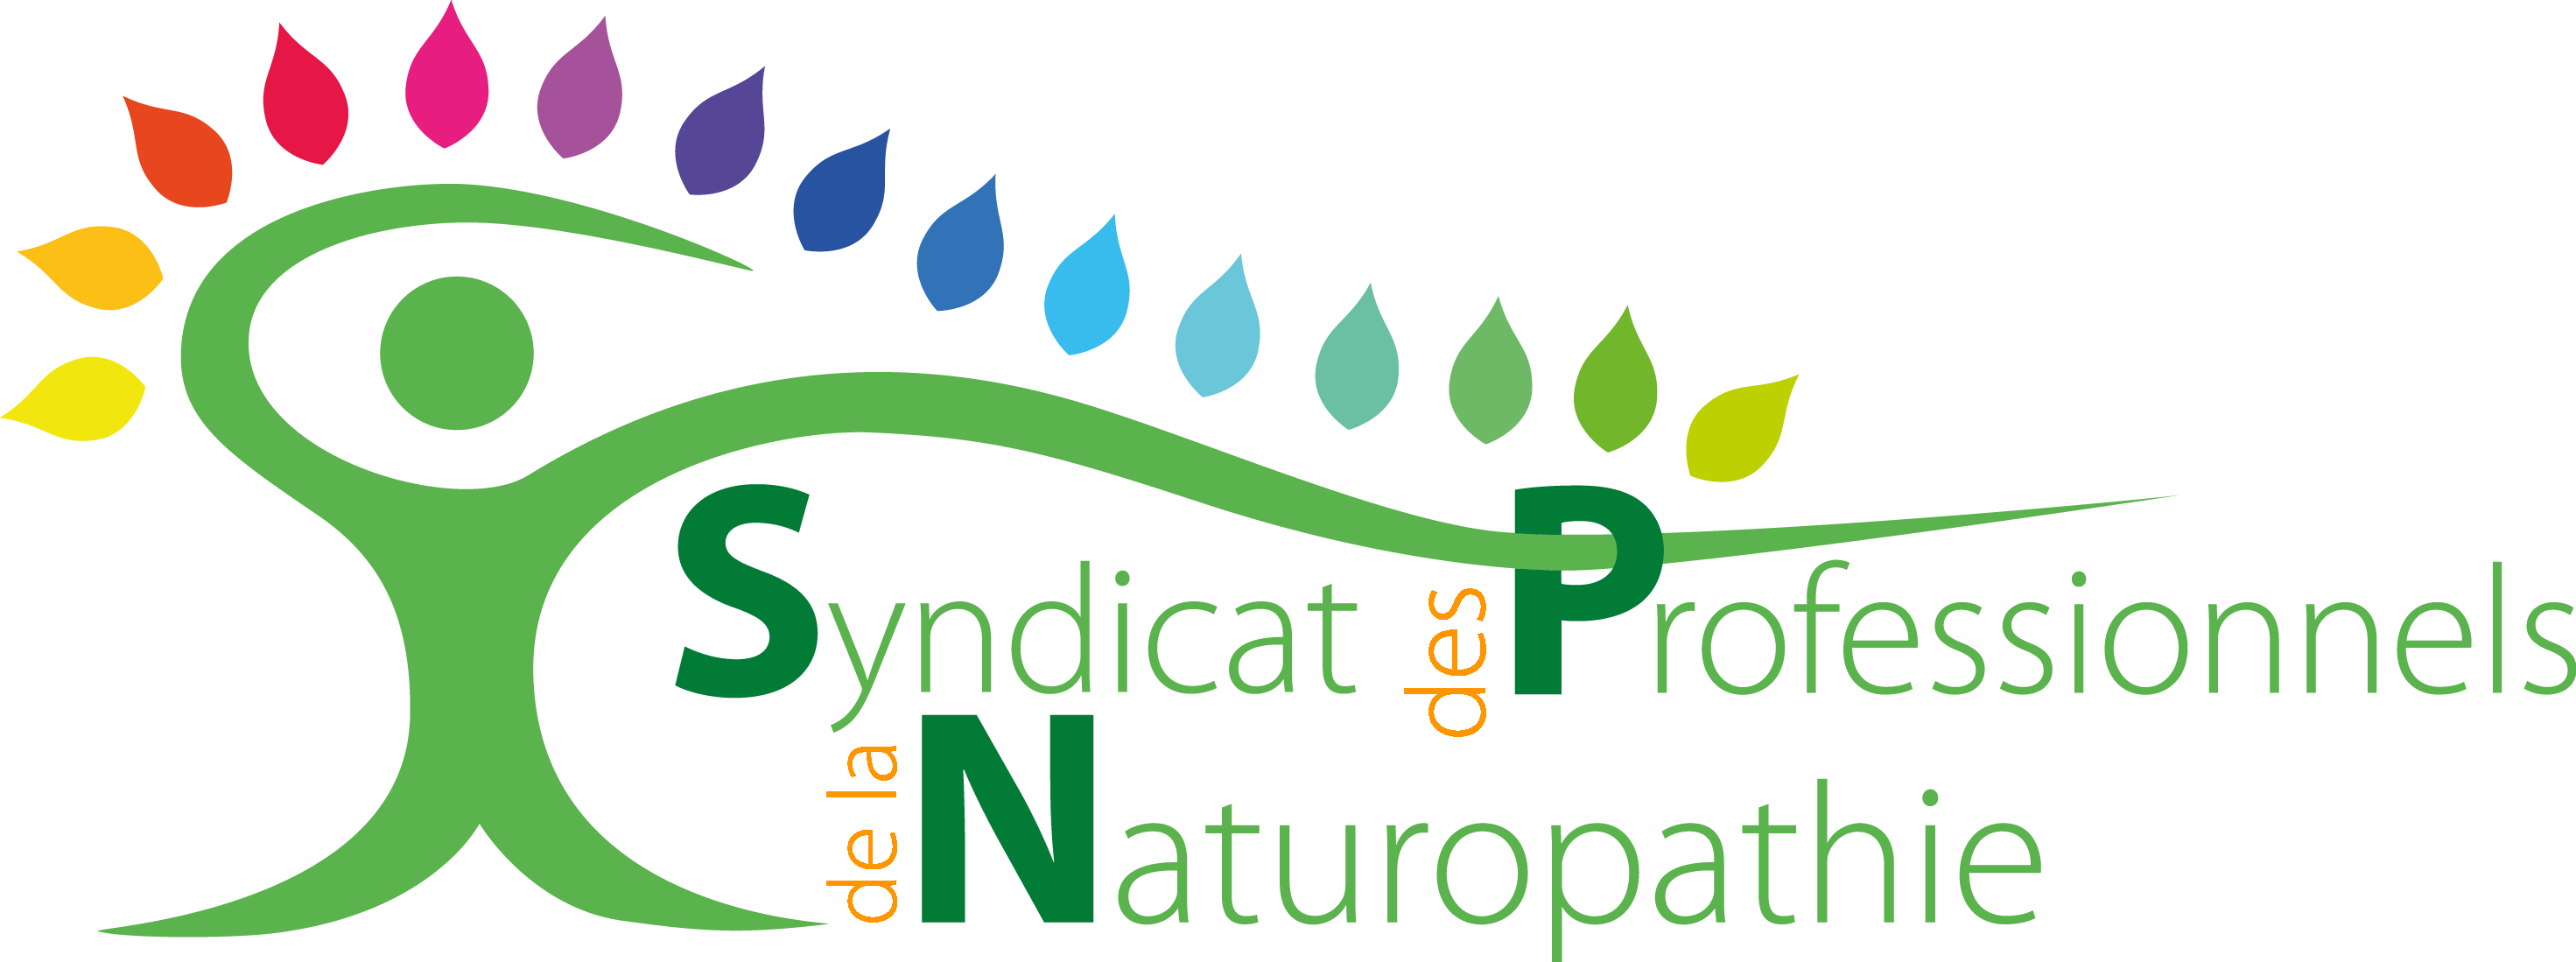 Sandrine Zégar est adhérente au Syndicat professionnels de la naturopathie